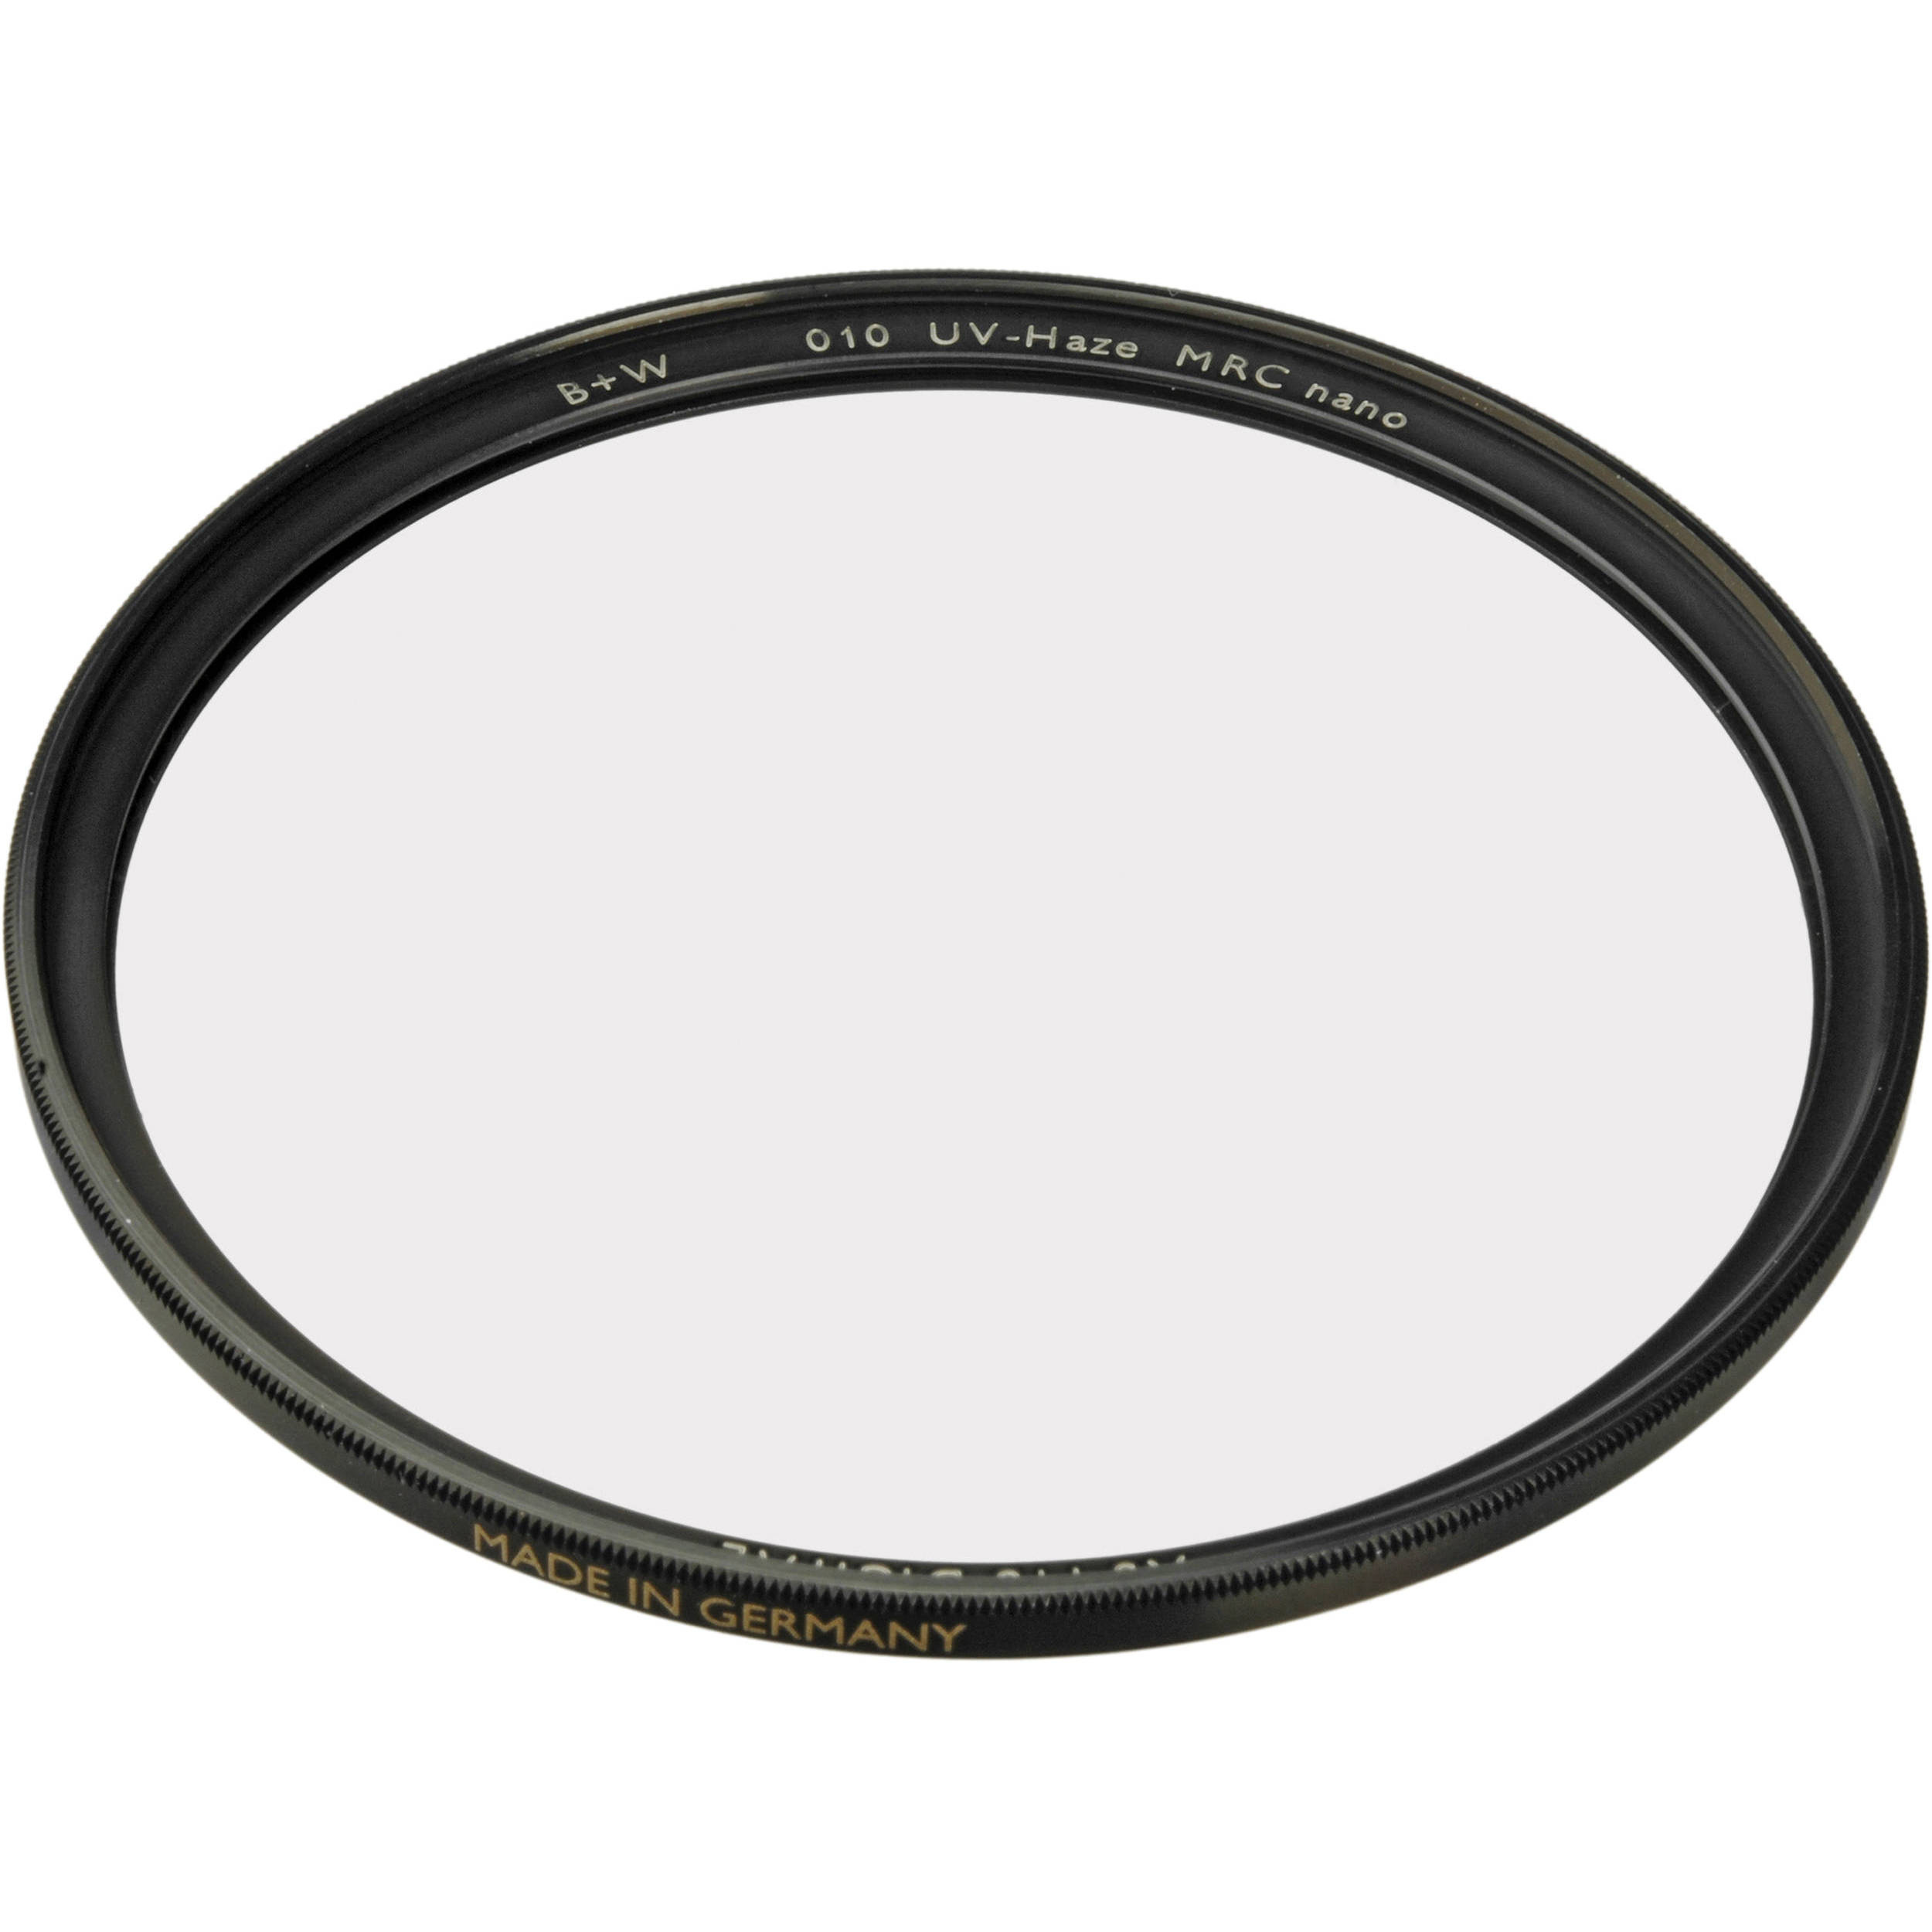 B+W 35.5mm XS-Pro UV MRC-Nano 010M Filter